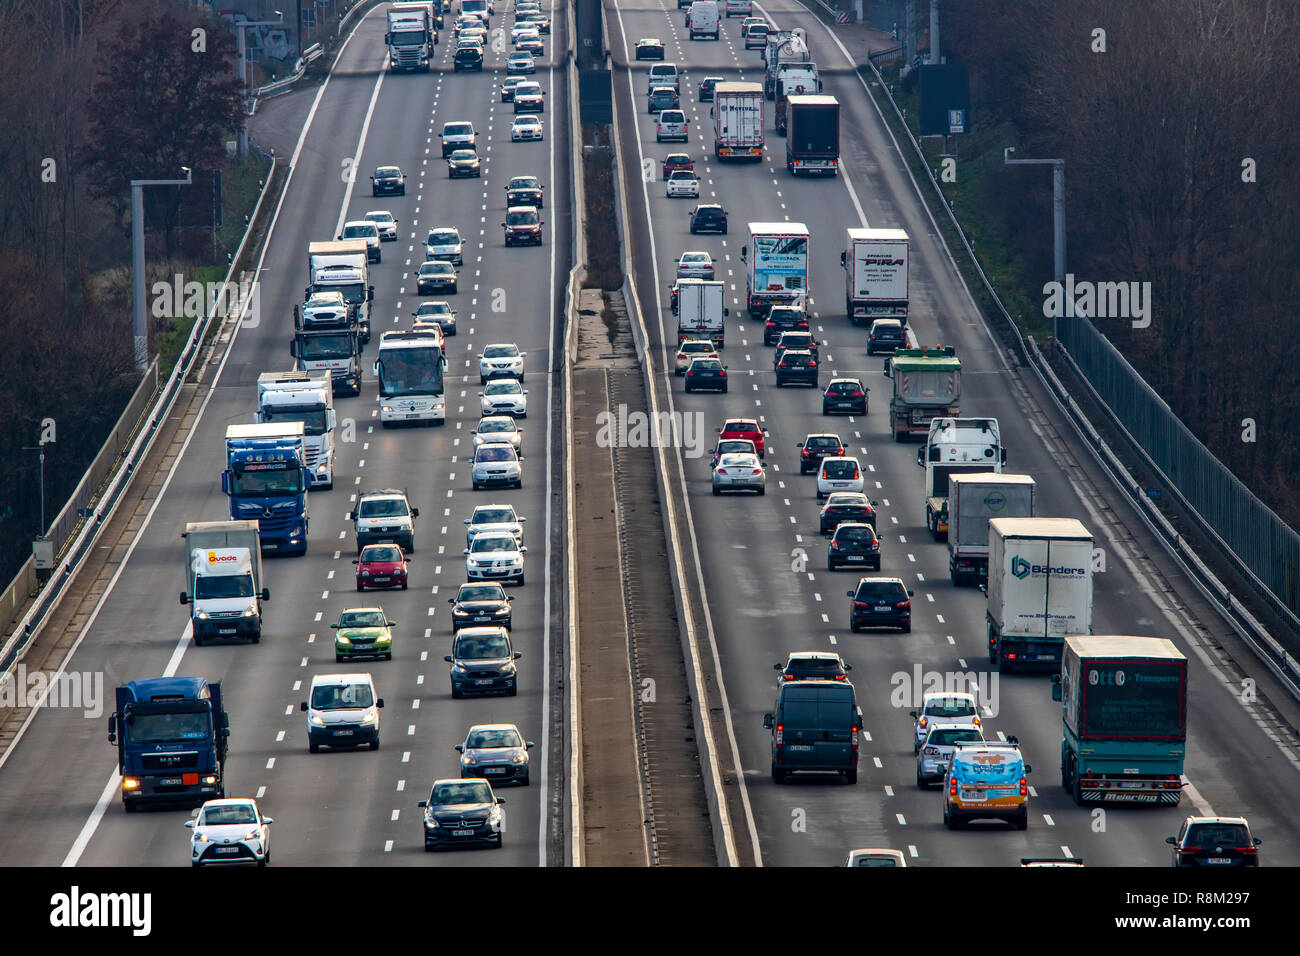 Autobahn A3 zwischen DŸsseldorf und Leverkusen, in der Nähe von Erkrath, Videokameras überwachen den Verkehr, Prüfen und sichern Sie die temporäre off-road Spiel in h Stockfoto